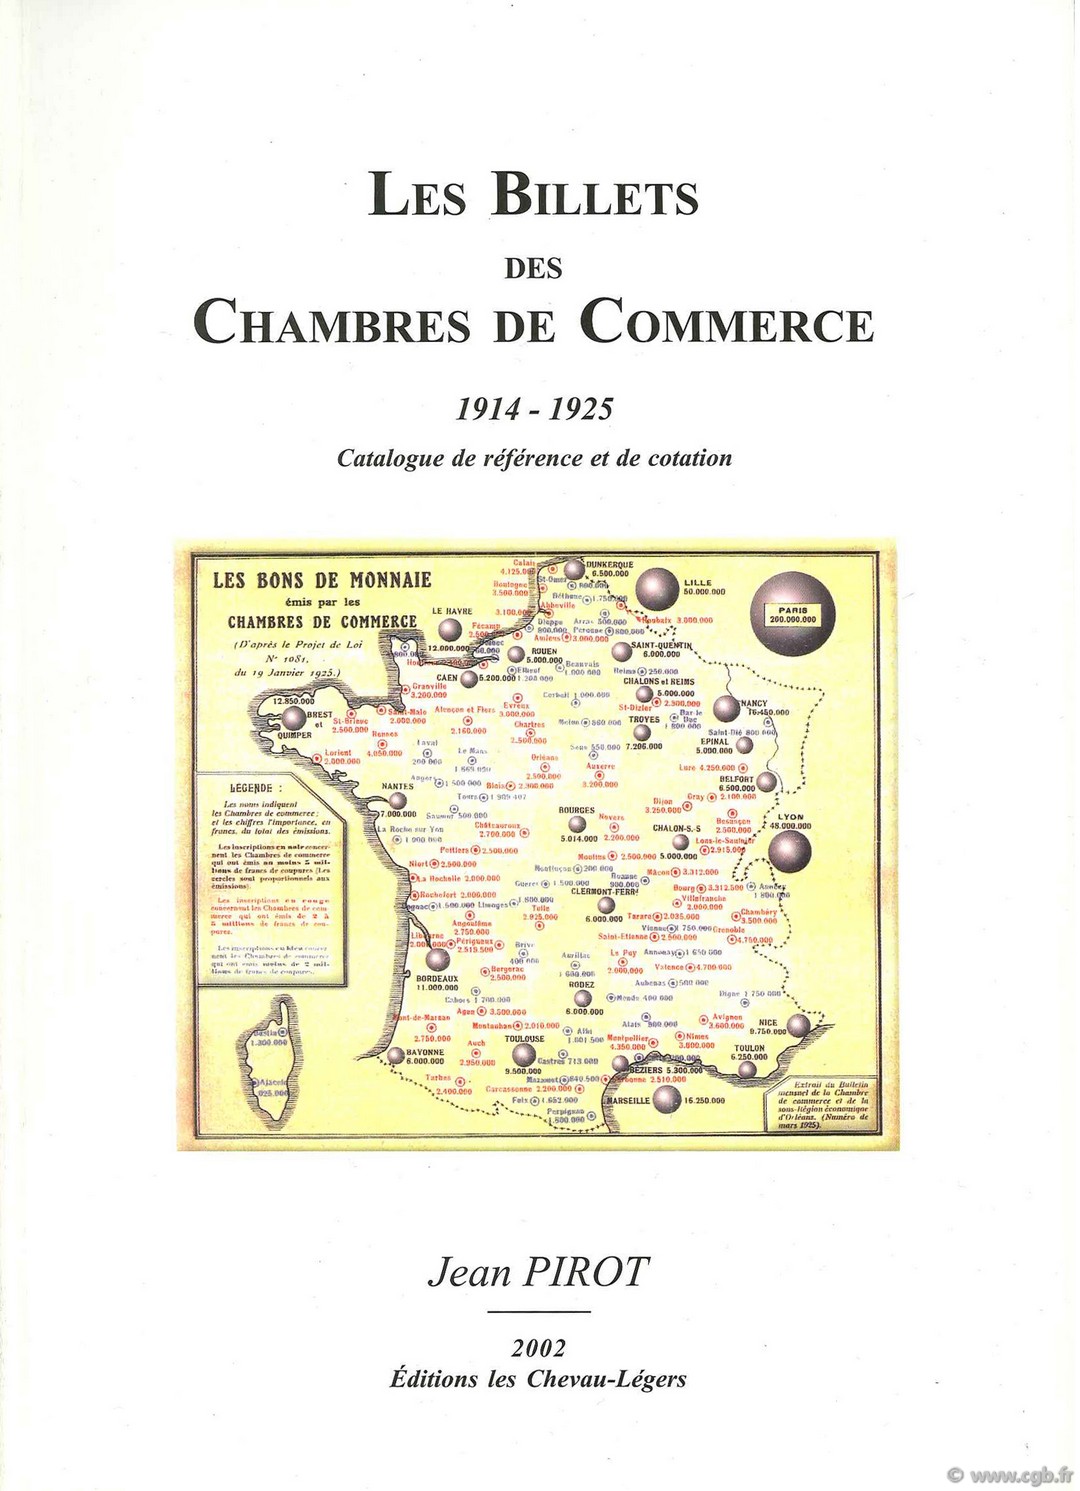 Les Billets des Chambres de Commerce 1914-1925 par J.Pirot